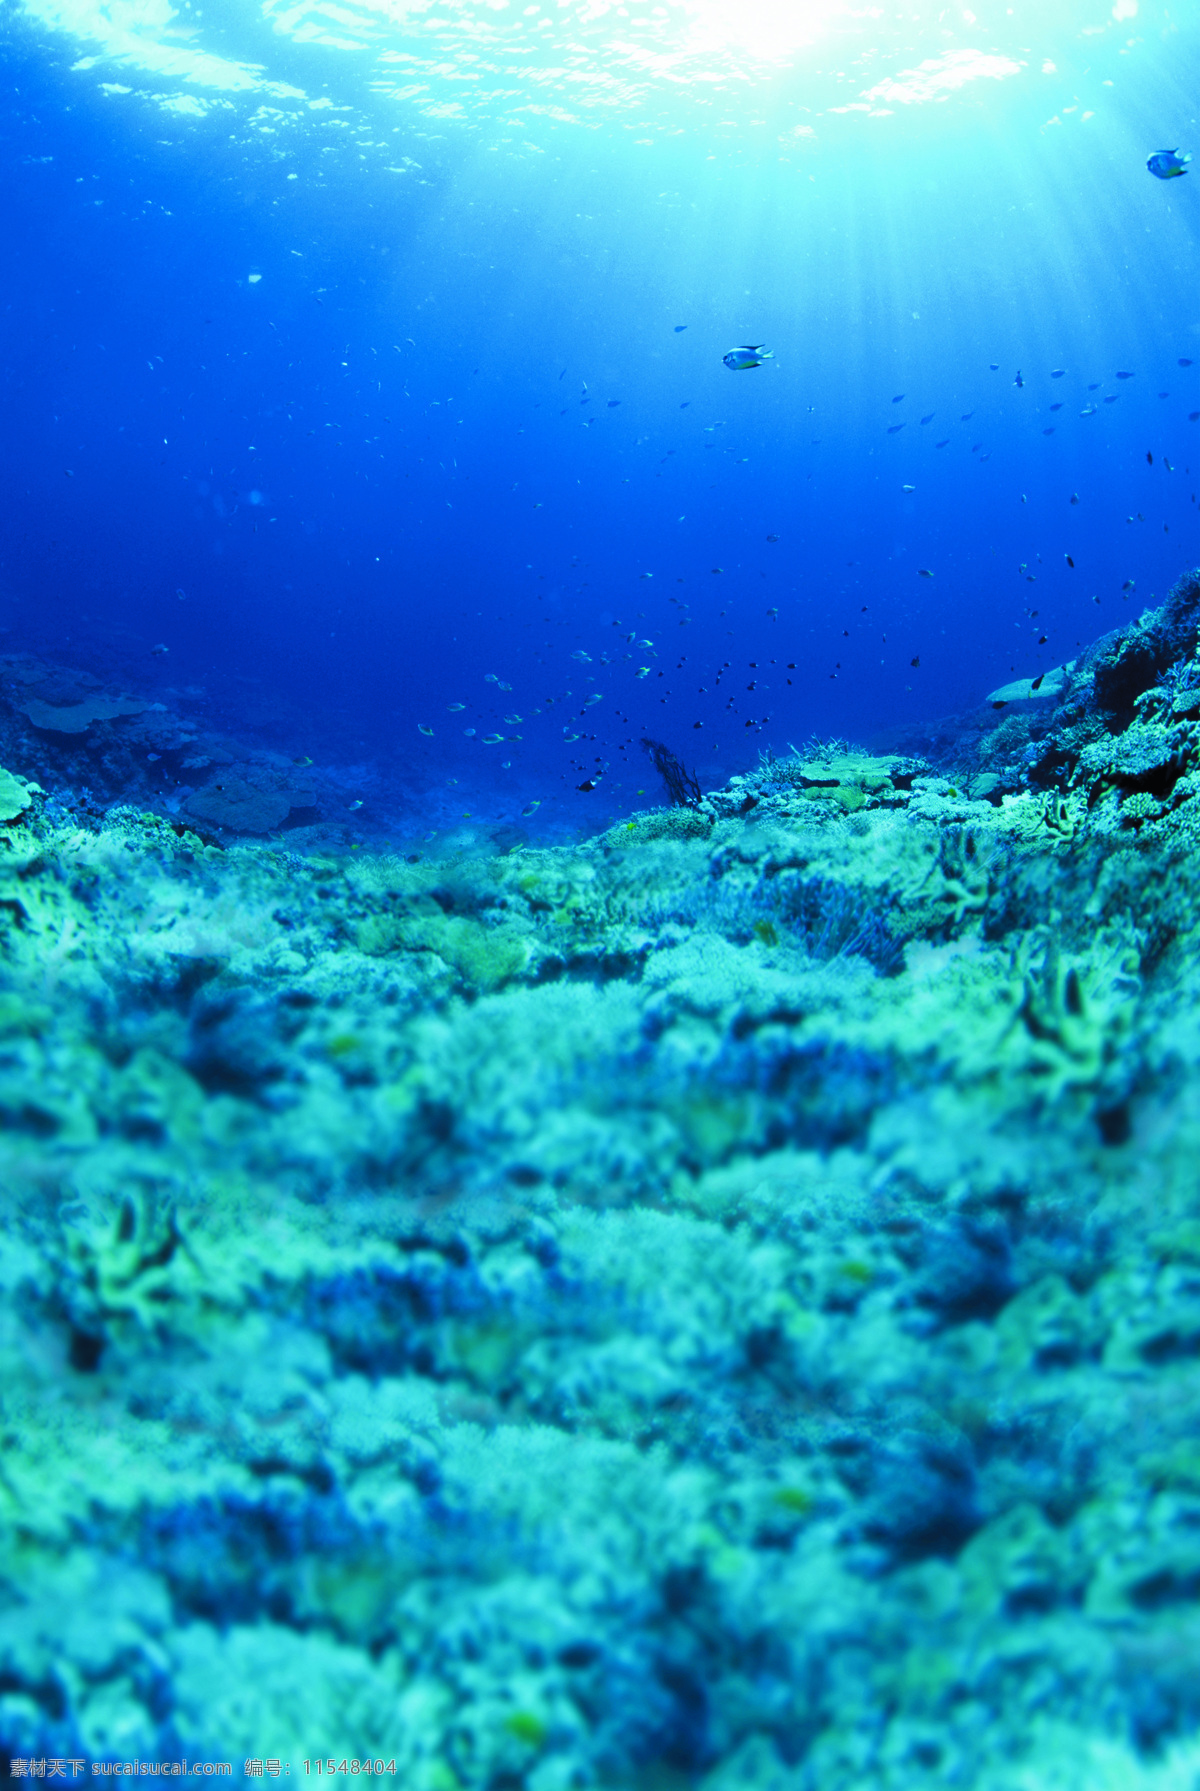 海底 风景 背景 图 海洋风景 背景图 青色 天蓝色